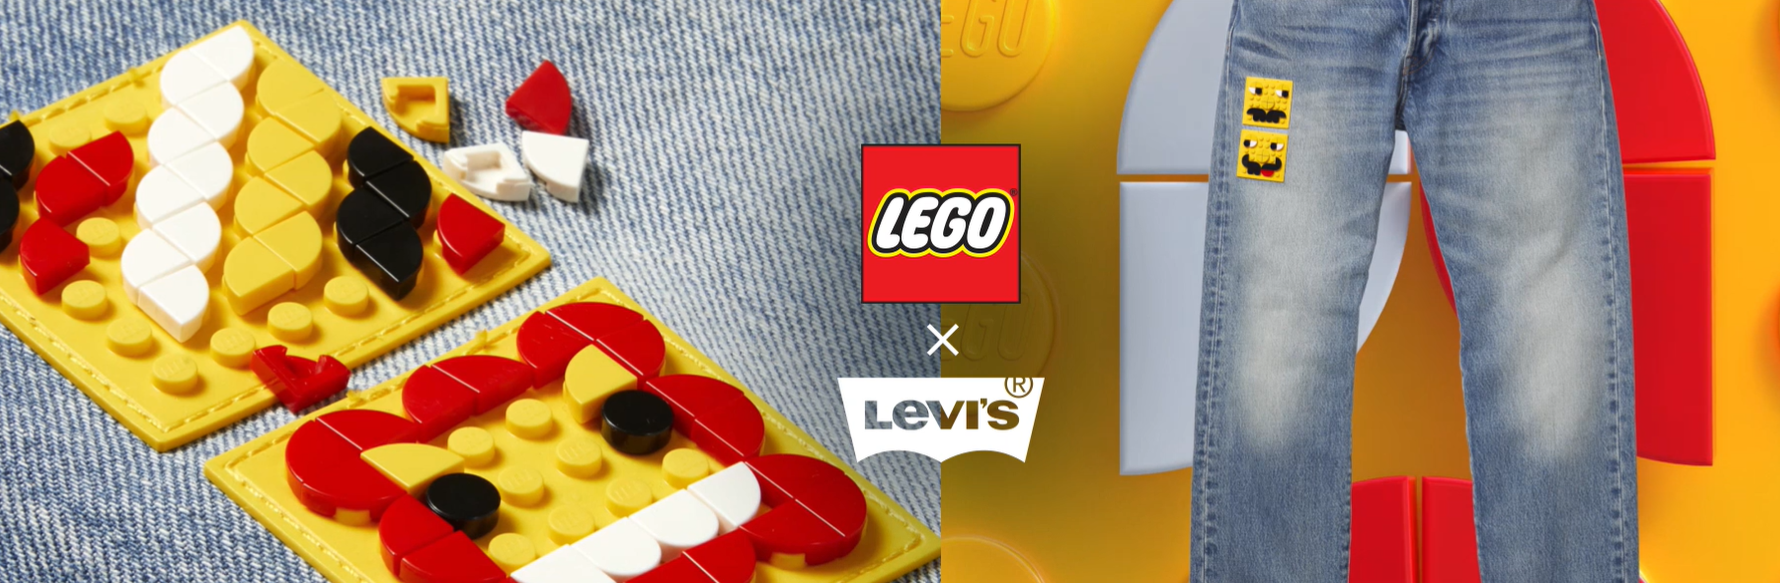 קוביות המשחק על הבגדים. שיתוף הפעולה בין החברות LEGO & Levi’s